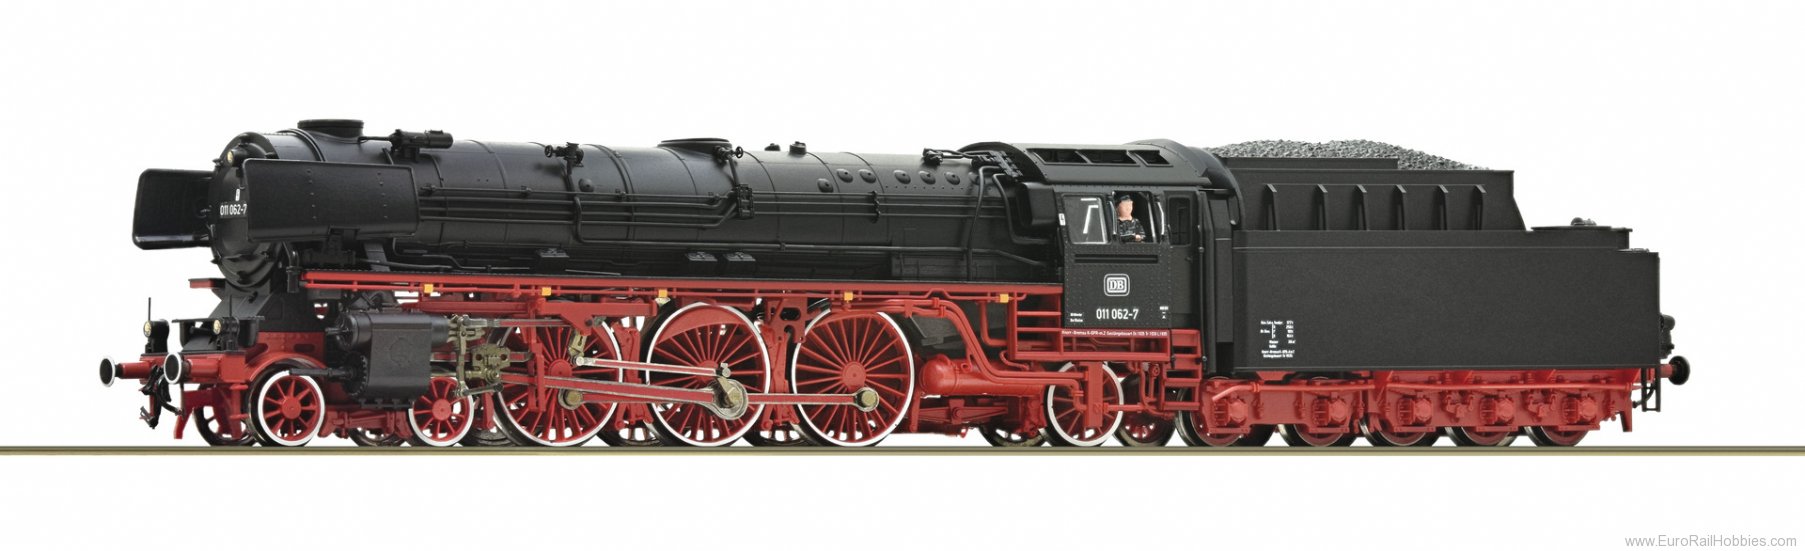 Roco 78052 Steam locomotive 011 062-7 DB (AC Digital Sou